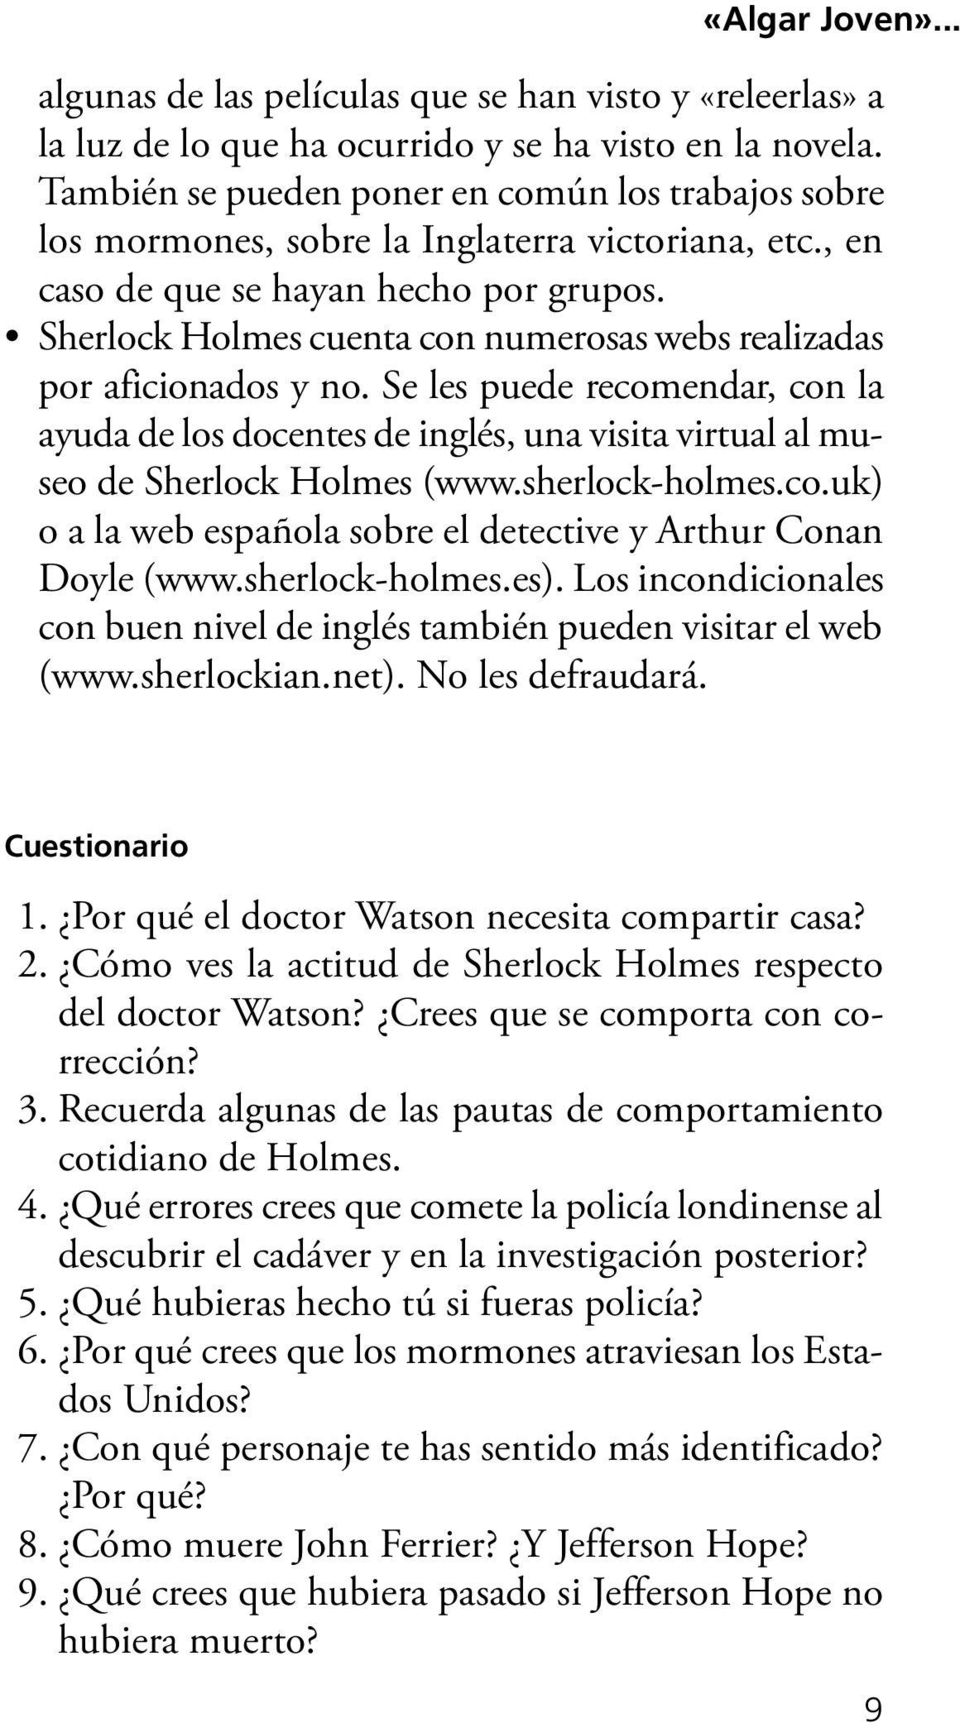 Sherlock Holmes cuenta con numerosas webs realizadas por aficionados y no. Se les puede recomendar, con la ayuda de los docentes de inglés, una visita virtual al museo de Sherlock Holmes (www.